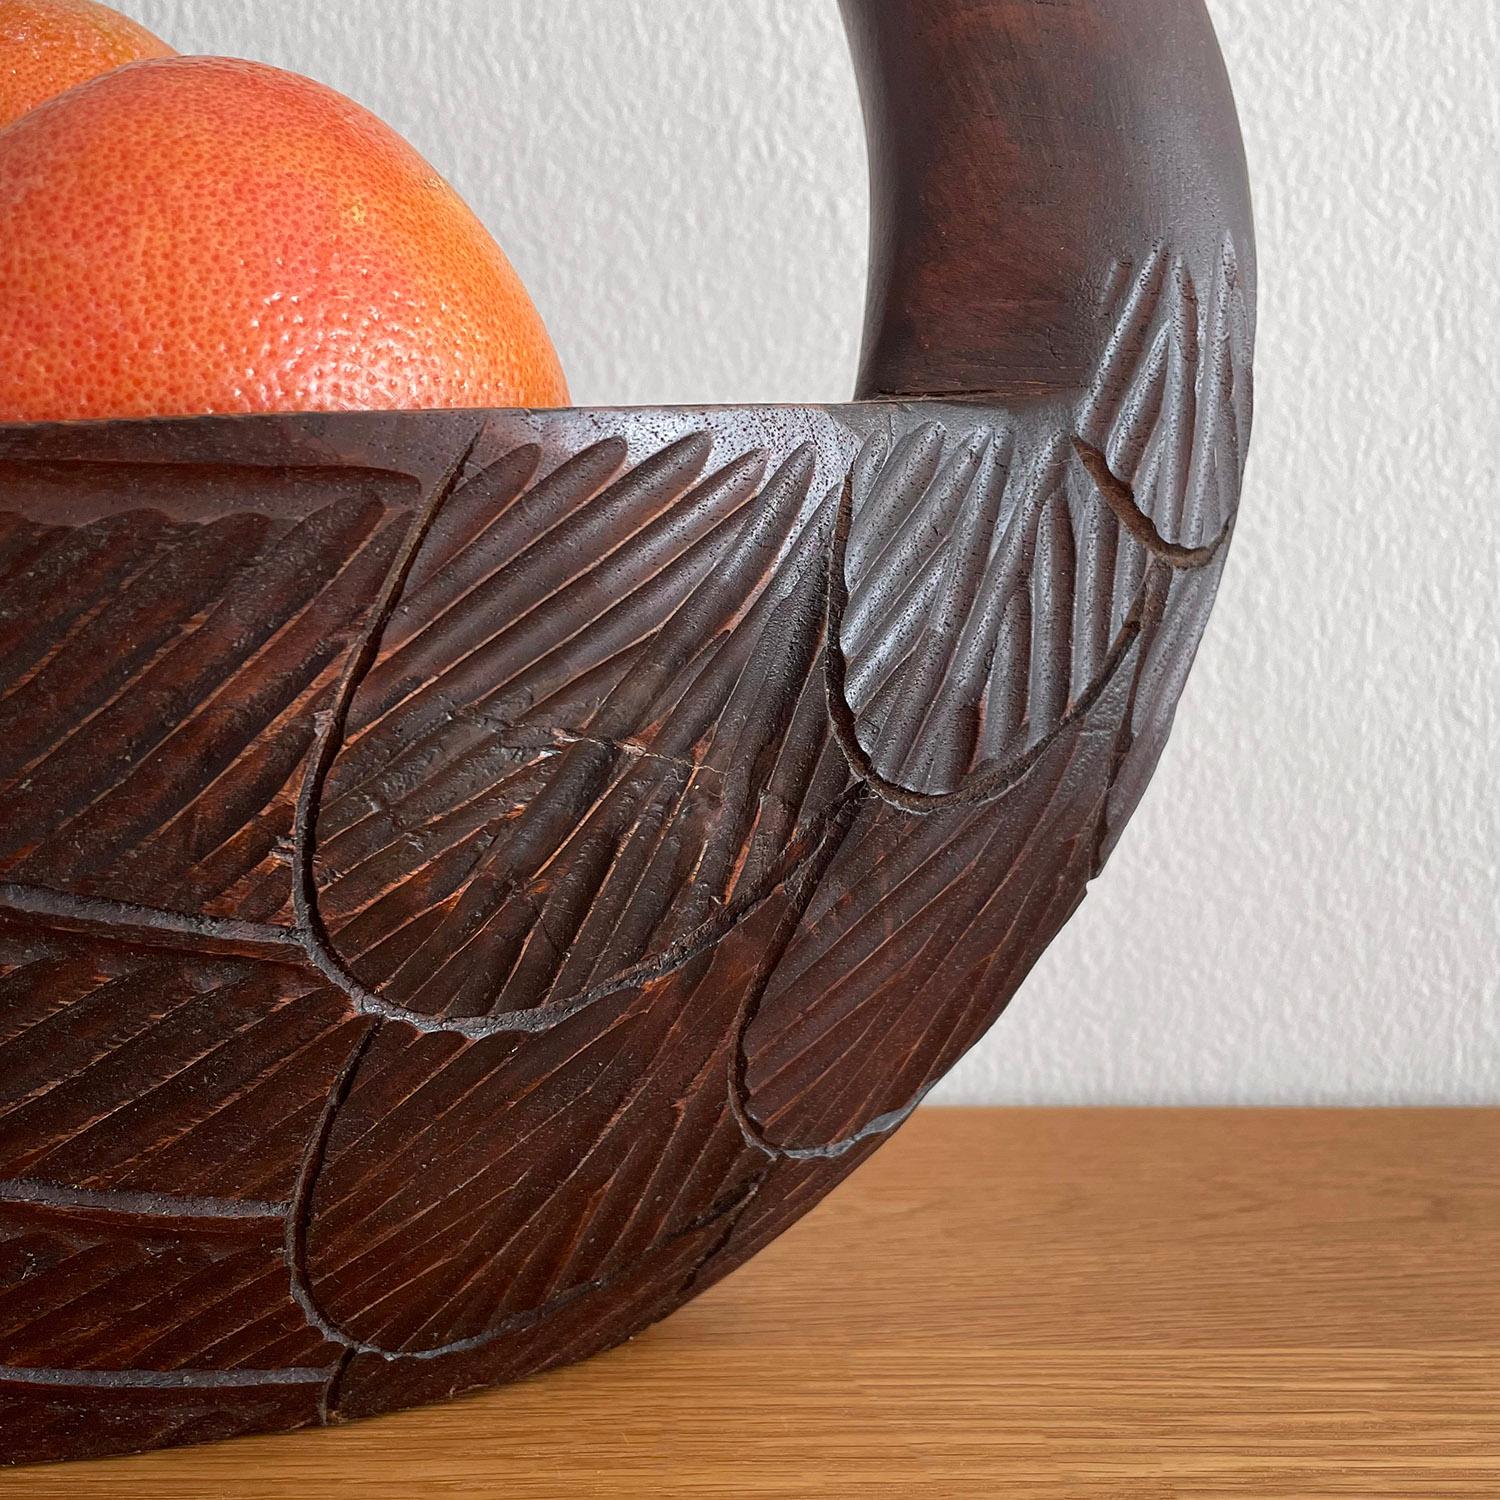 Folk Art Carved Wood Swan Bowl For Sale 1